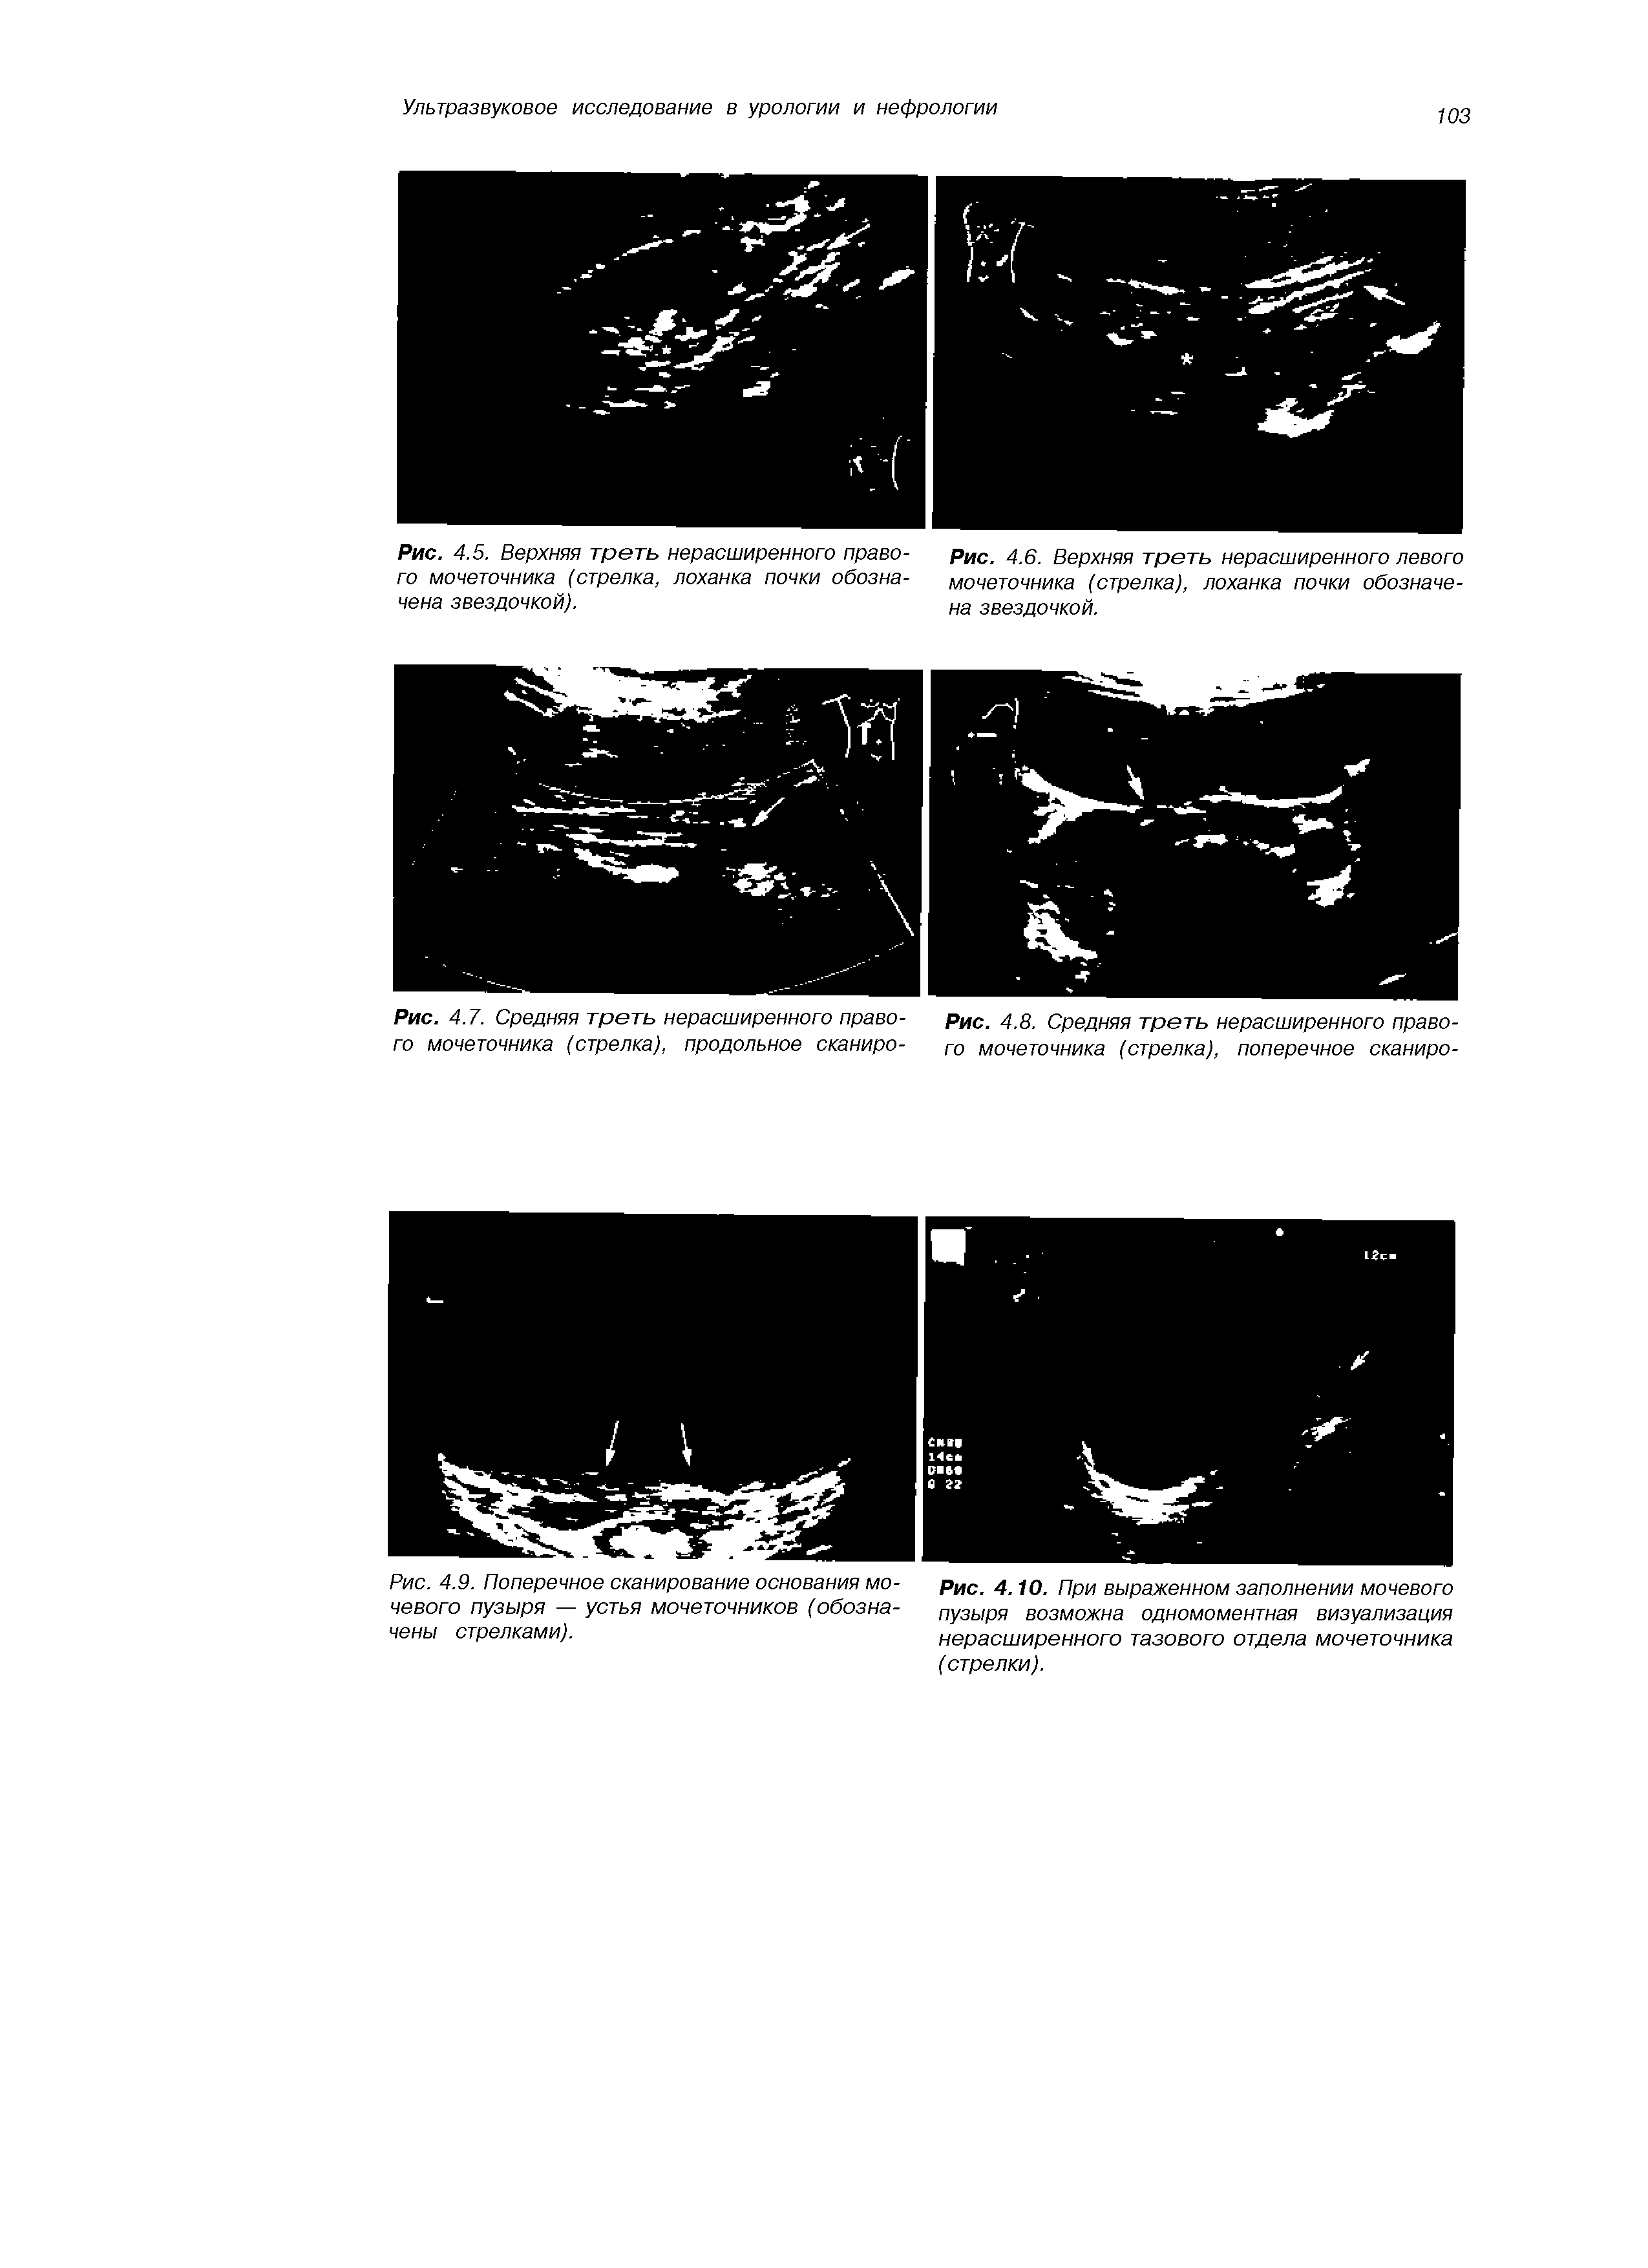 Рис. 4.9. Поперечное сканирование основания мочевого пузыря — устья мочеточников (обозначены стрелками).